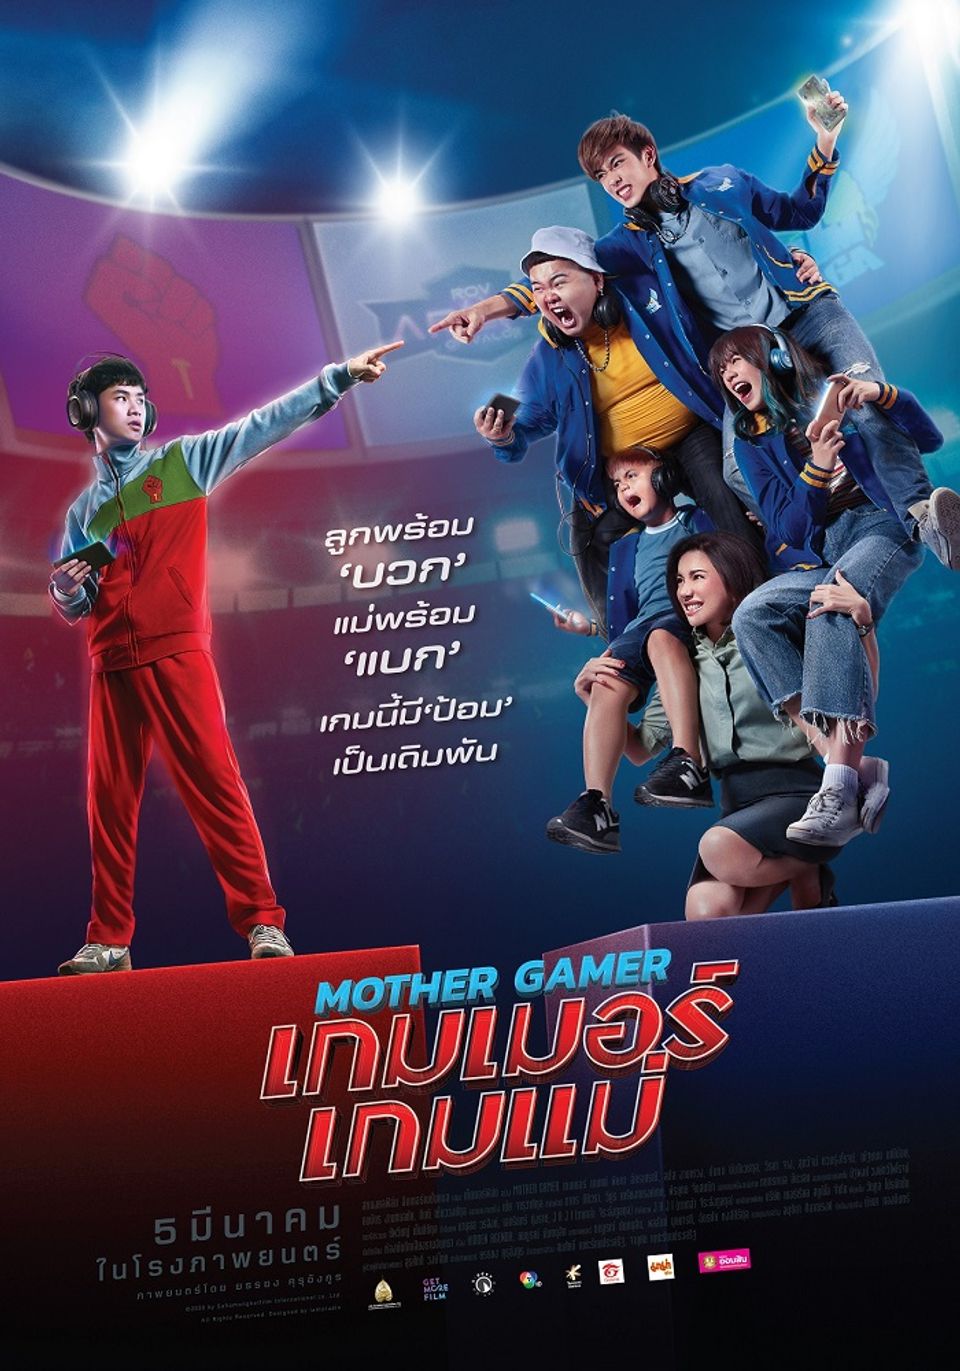 ภาพยนตร์ไทย “MOTHER GAMER เกมเมอร์ เกมแม่” (MOTHER GAMER)